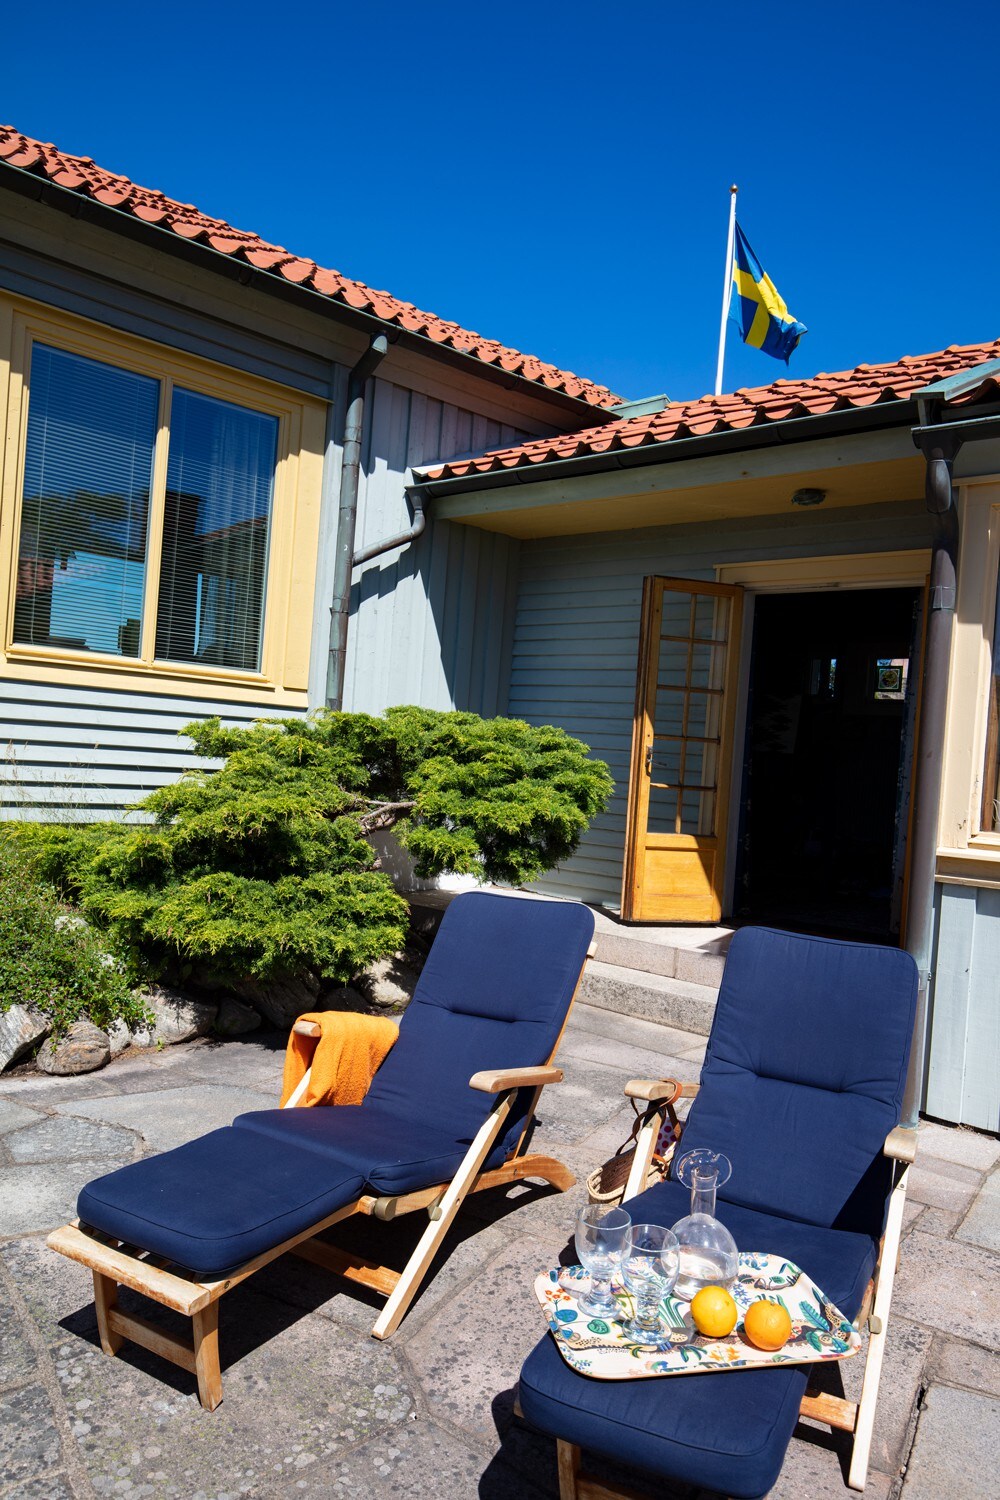 位于菲耶尔巴卡（ Fjällbacka ）的美丽房屋，景观绝佳。